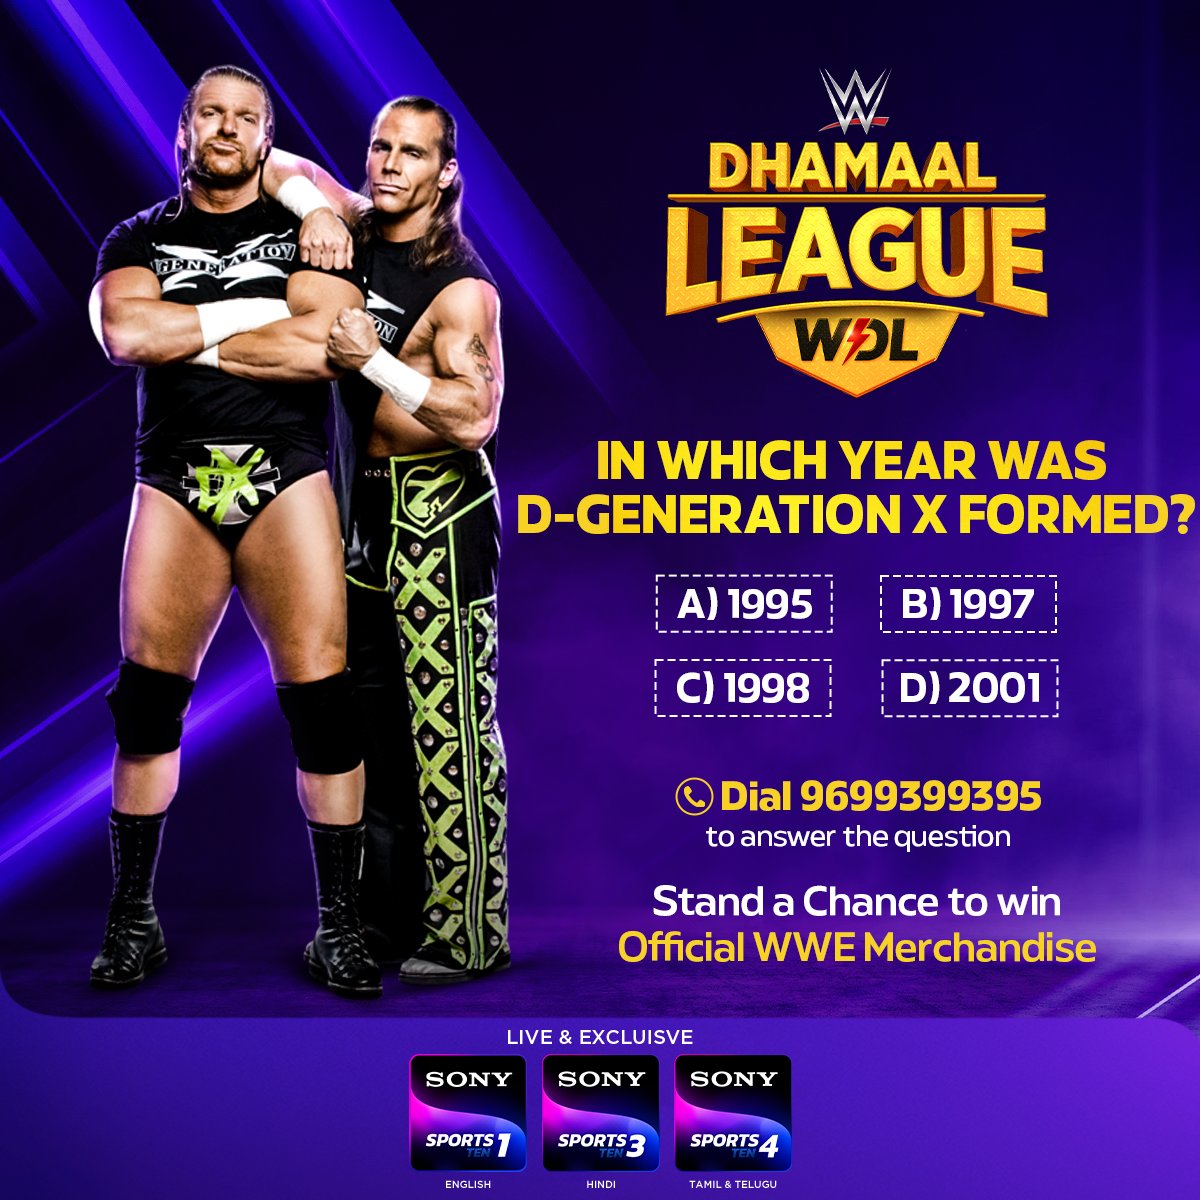 We got 2 words for ya 👉 Guess it 😜

#SonySportsNetwork #WWE #WWEIndia #WWEDhamaalLeague | @WWE @WWEIndia